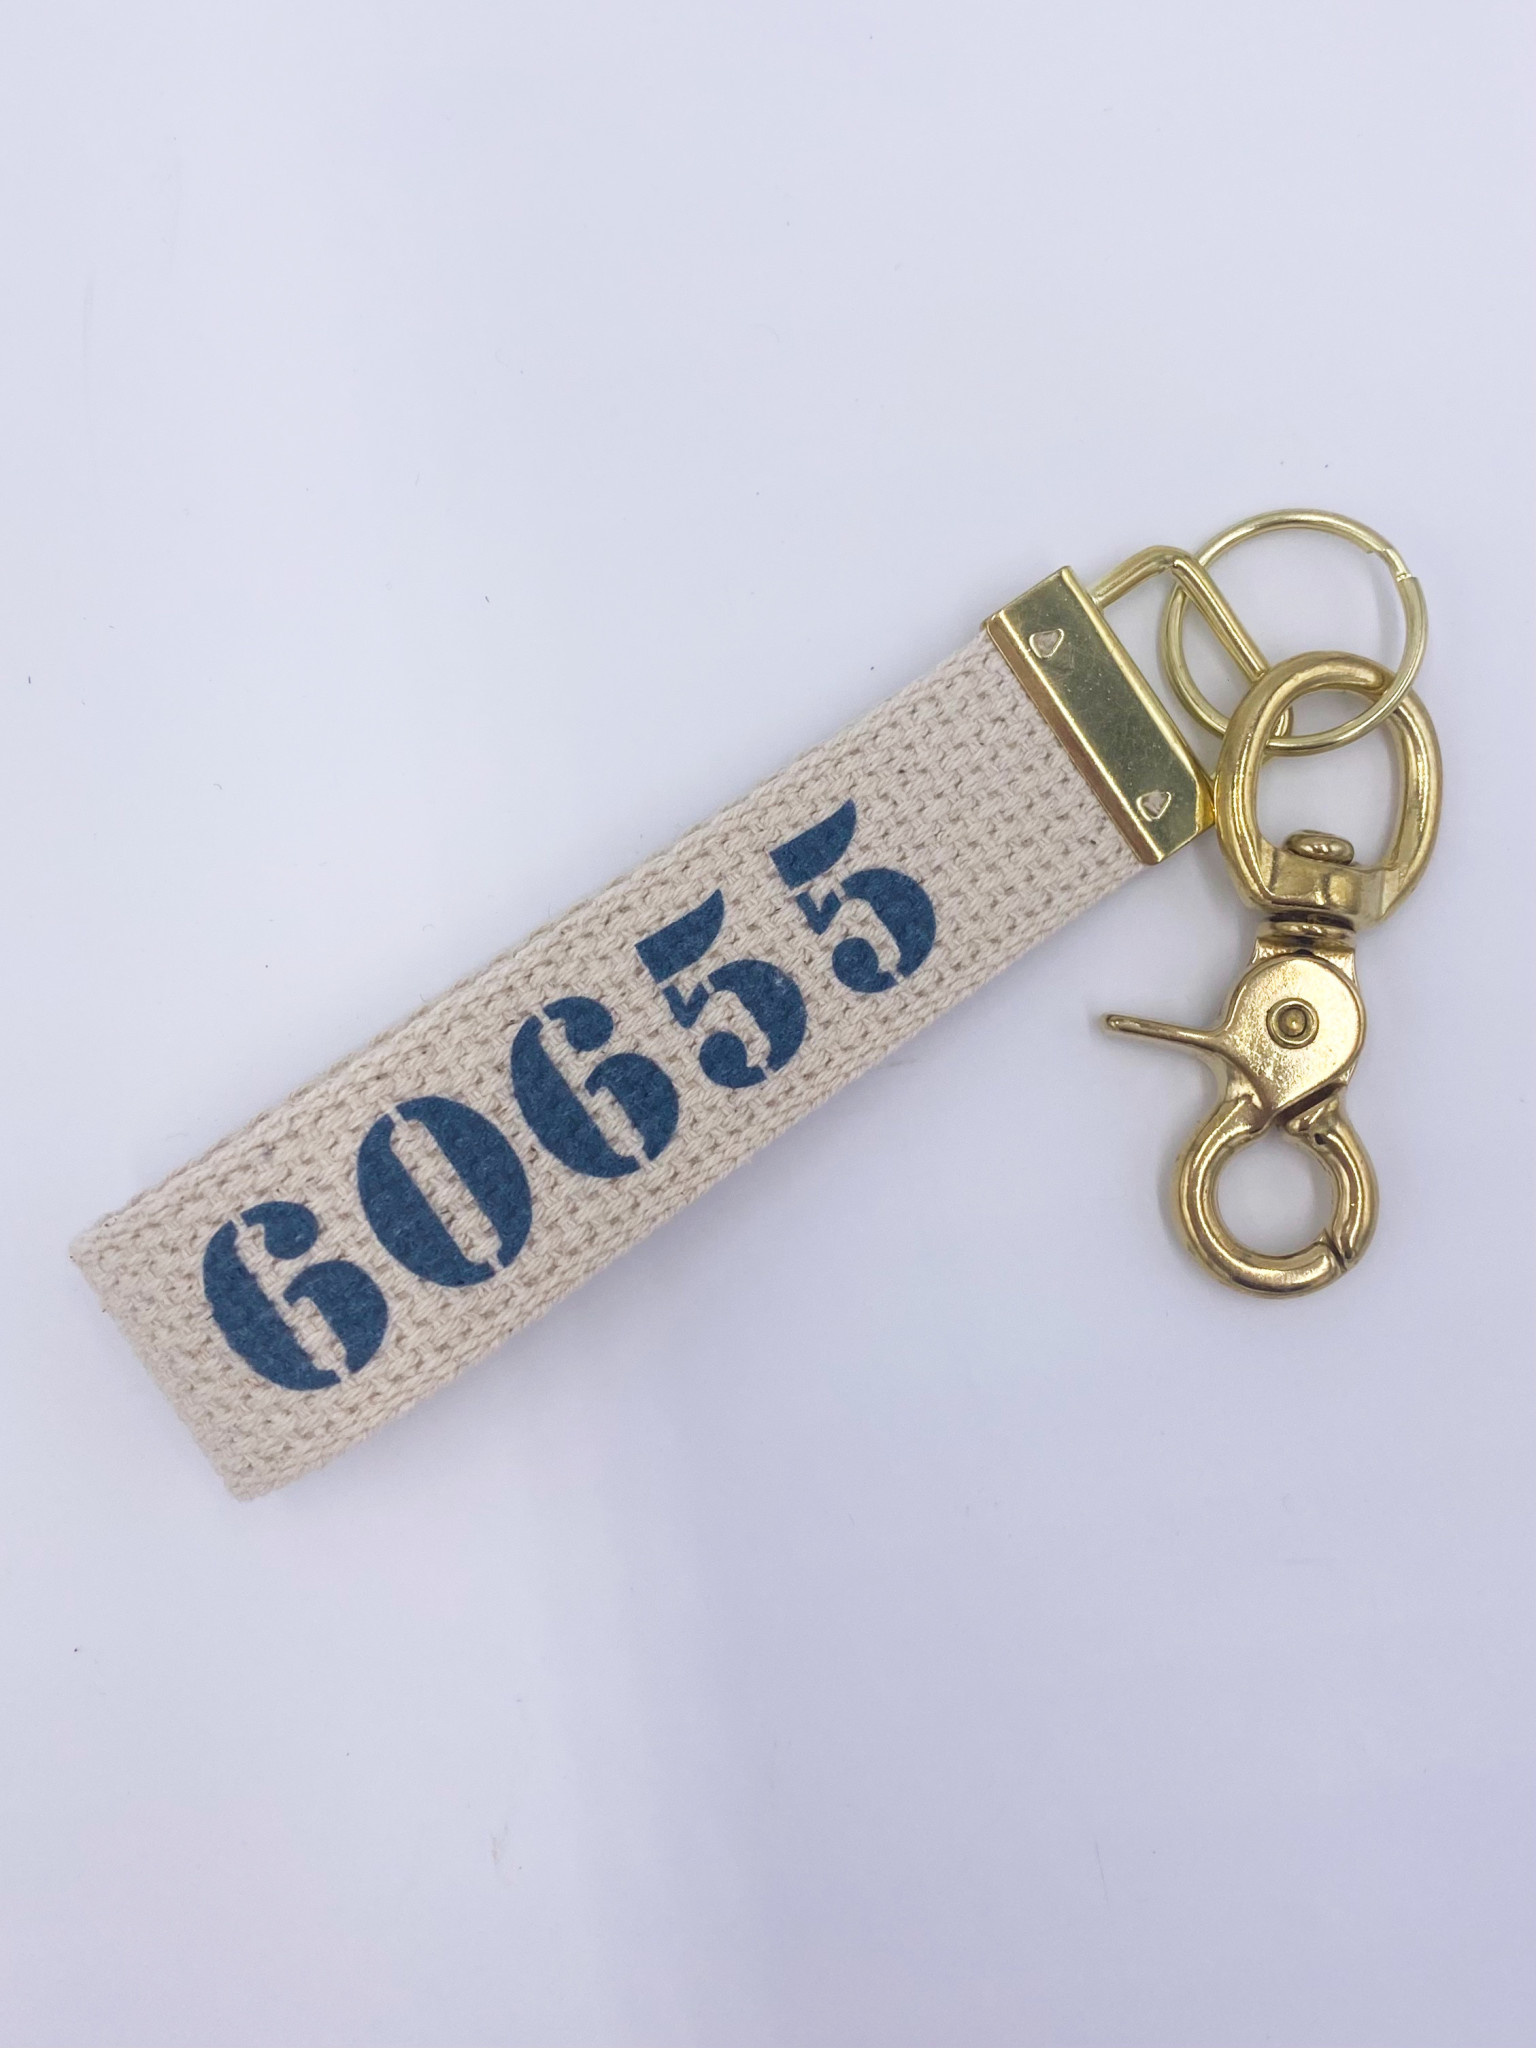 Dog Tag Key Chain with Hatfield McCoy Logo - Hatfield & McCoy